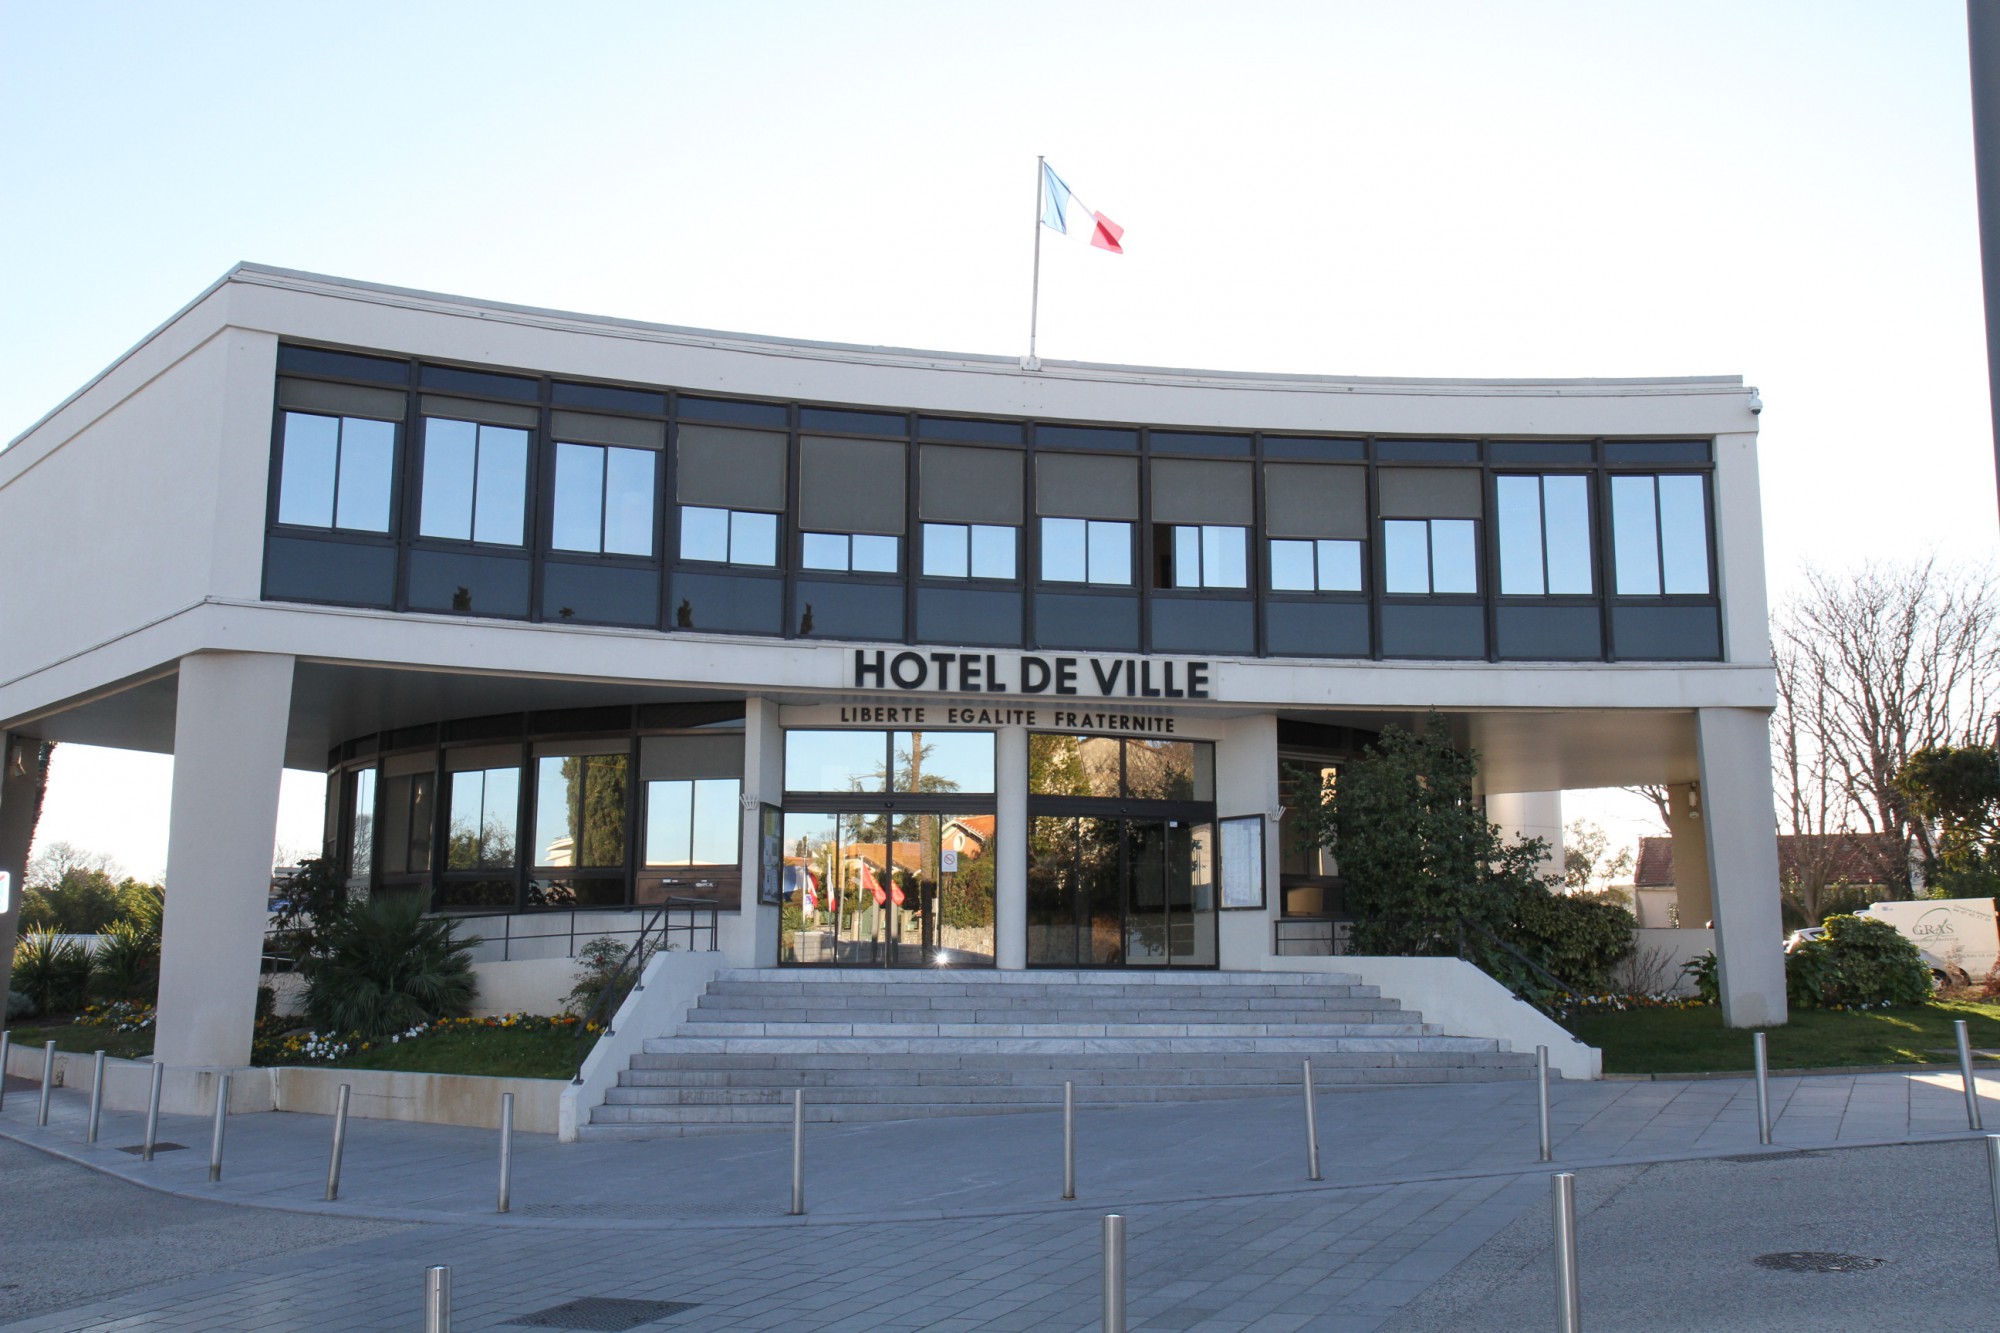 Castelnau-le-Lez - Une majorité de godillots politiques v/s une opposition constructive